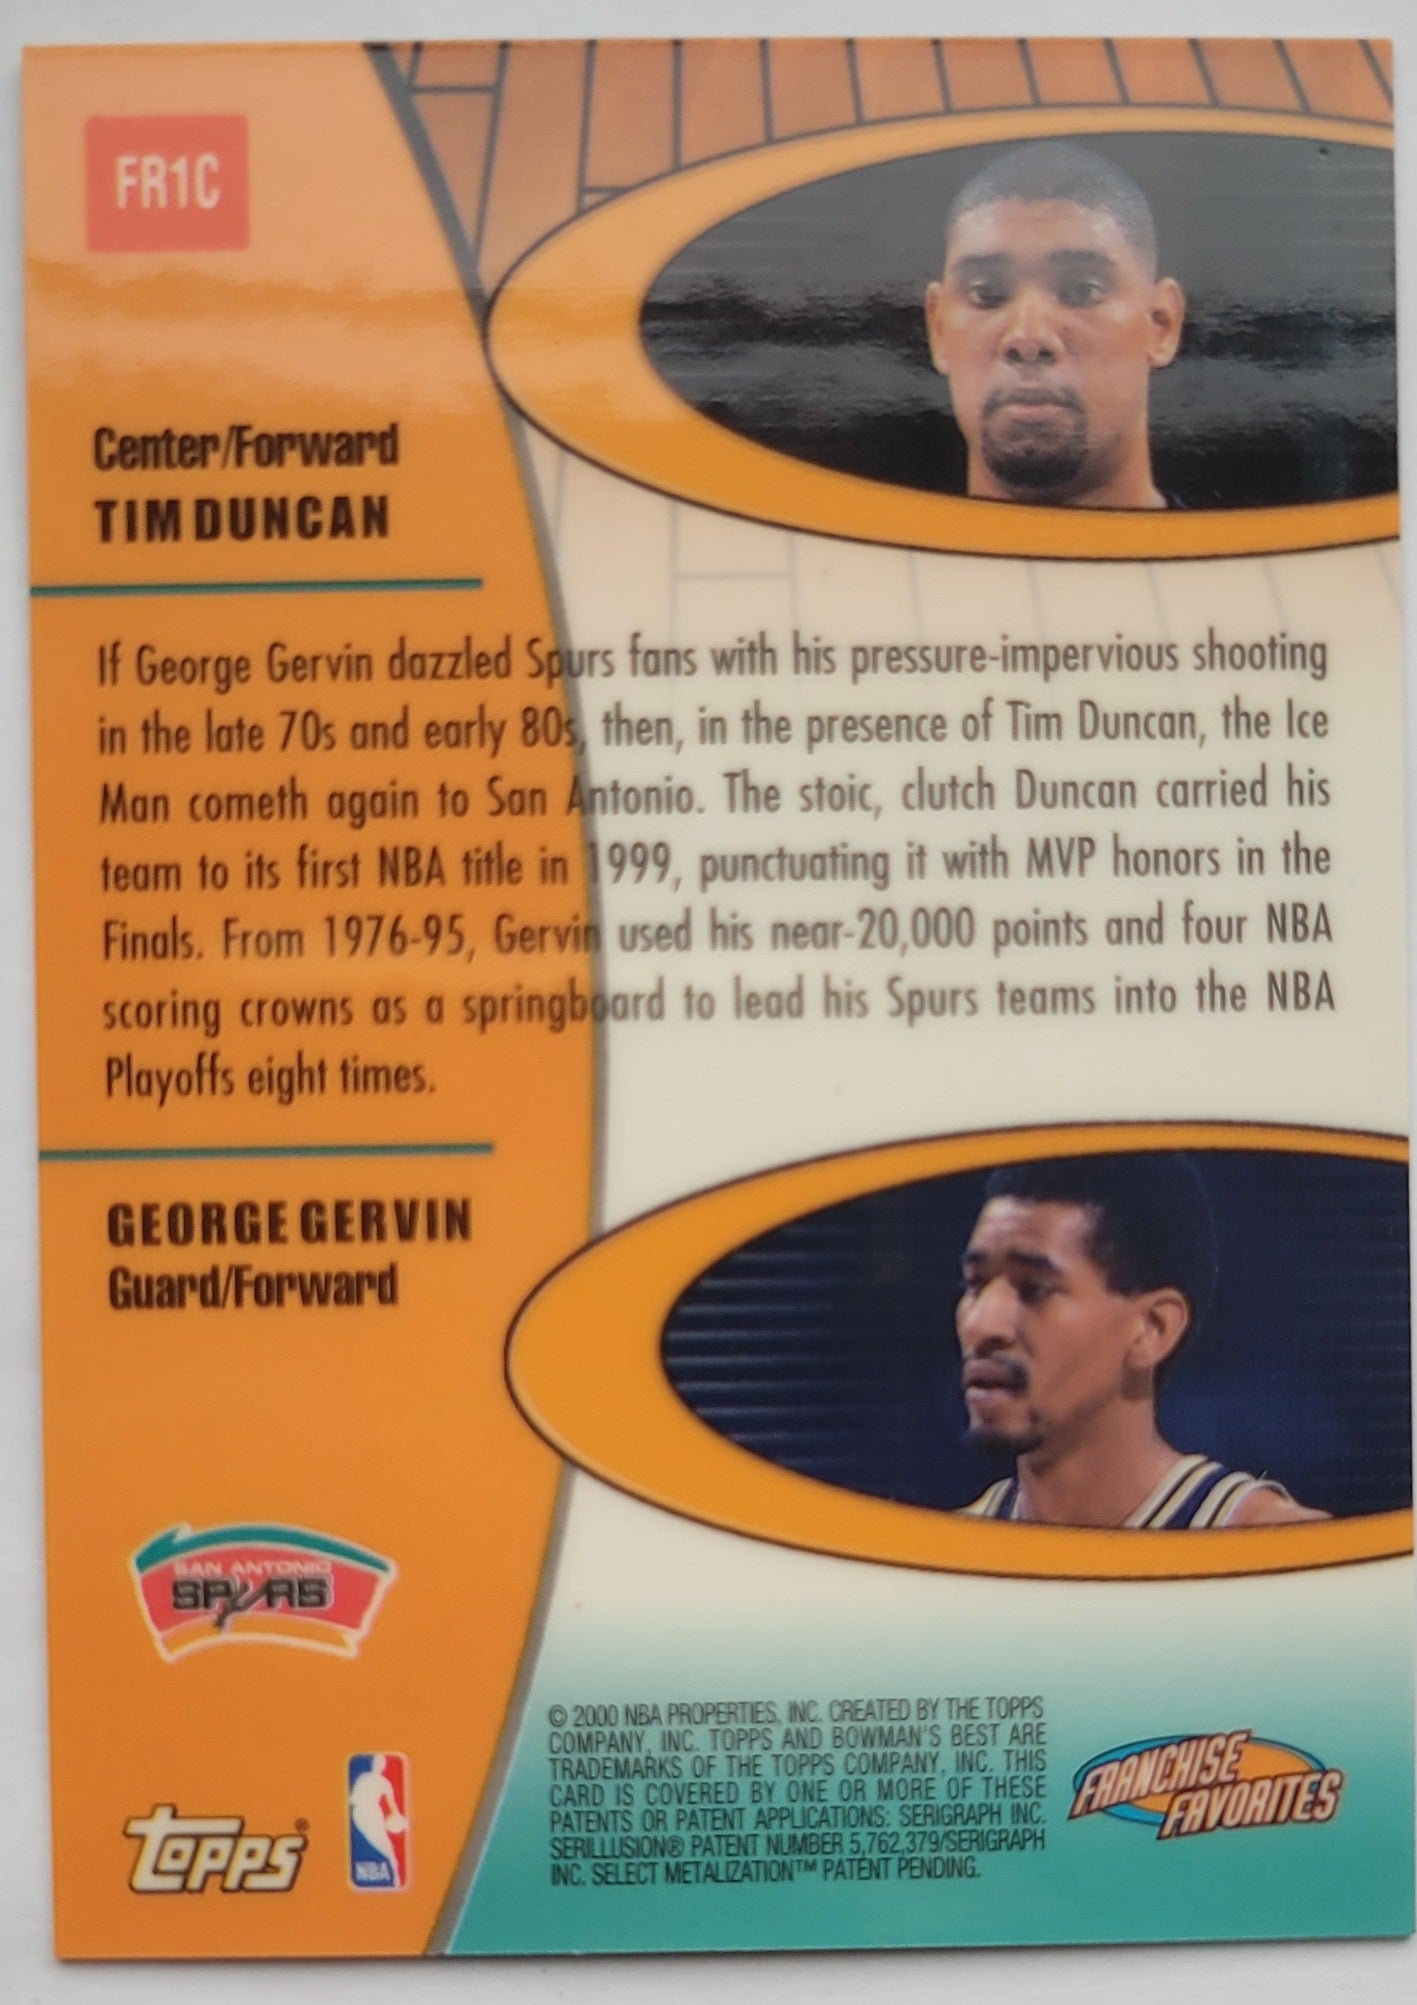 Tim Duncan / George Gervin - 1999-00 Bowman's Best Franchise Favorites #FR1C